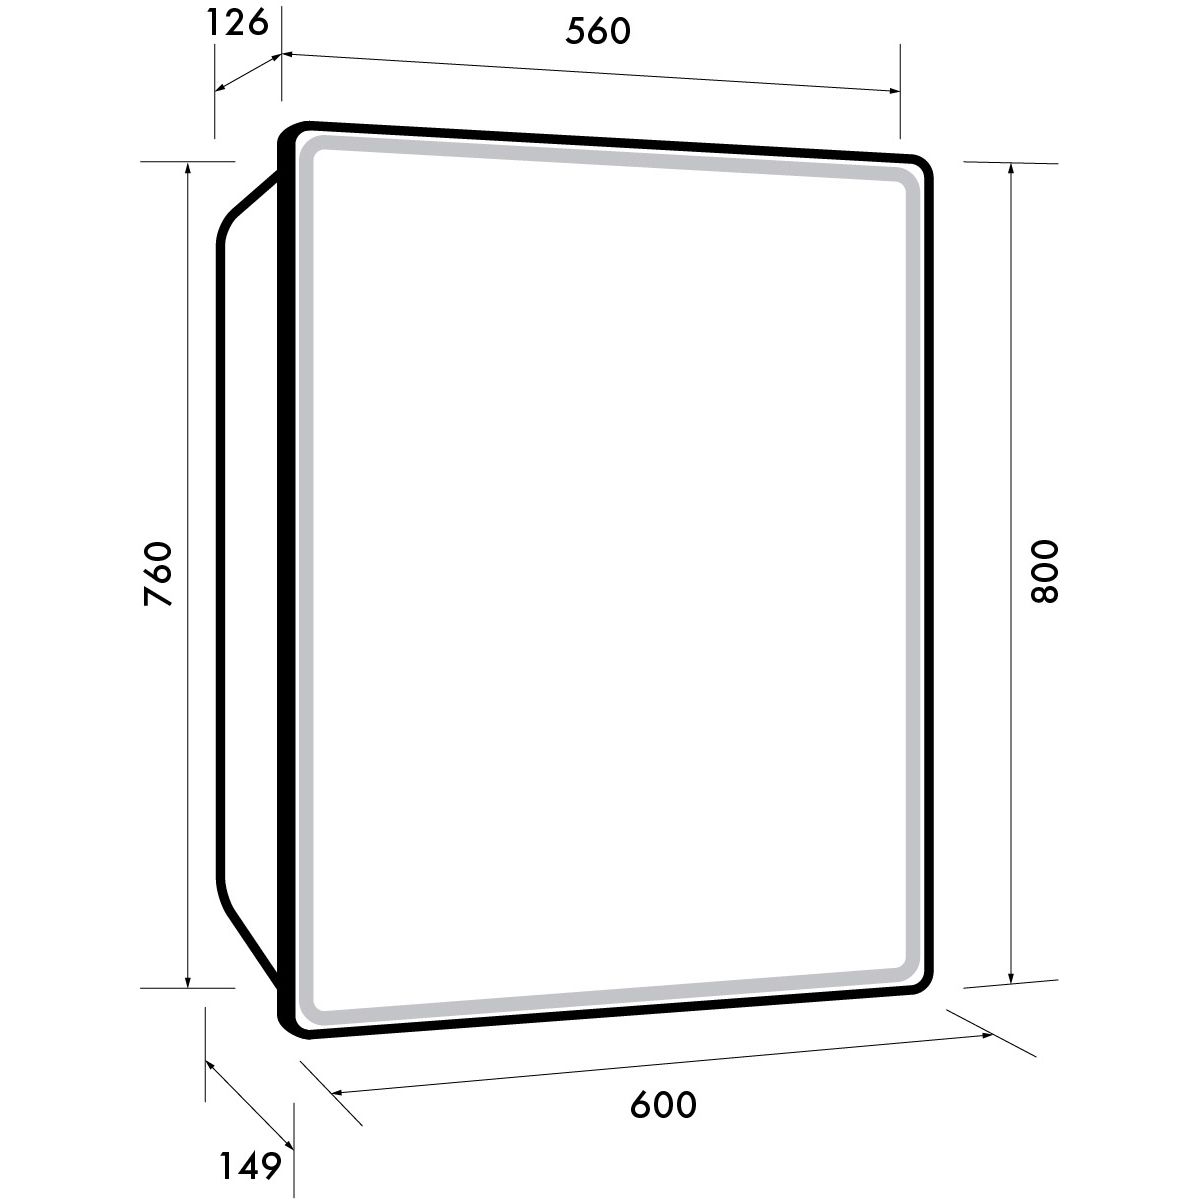 Зеркальный шкаф Dreja Point 60 см 1 дв., 2 стекл. полки, инфр. выключатель, LED, розетка, белый (99.9032)